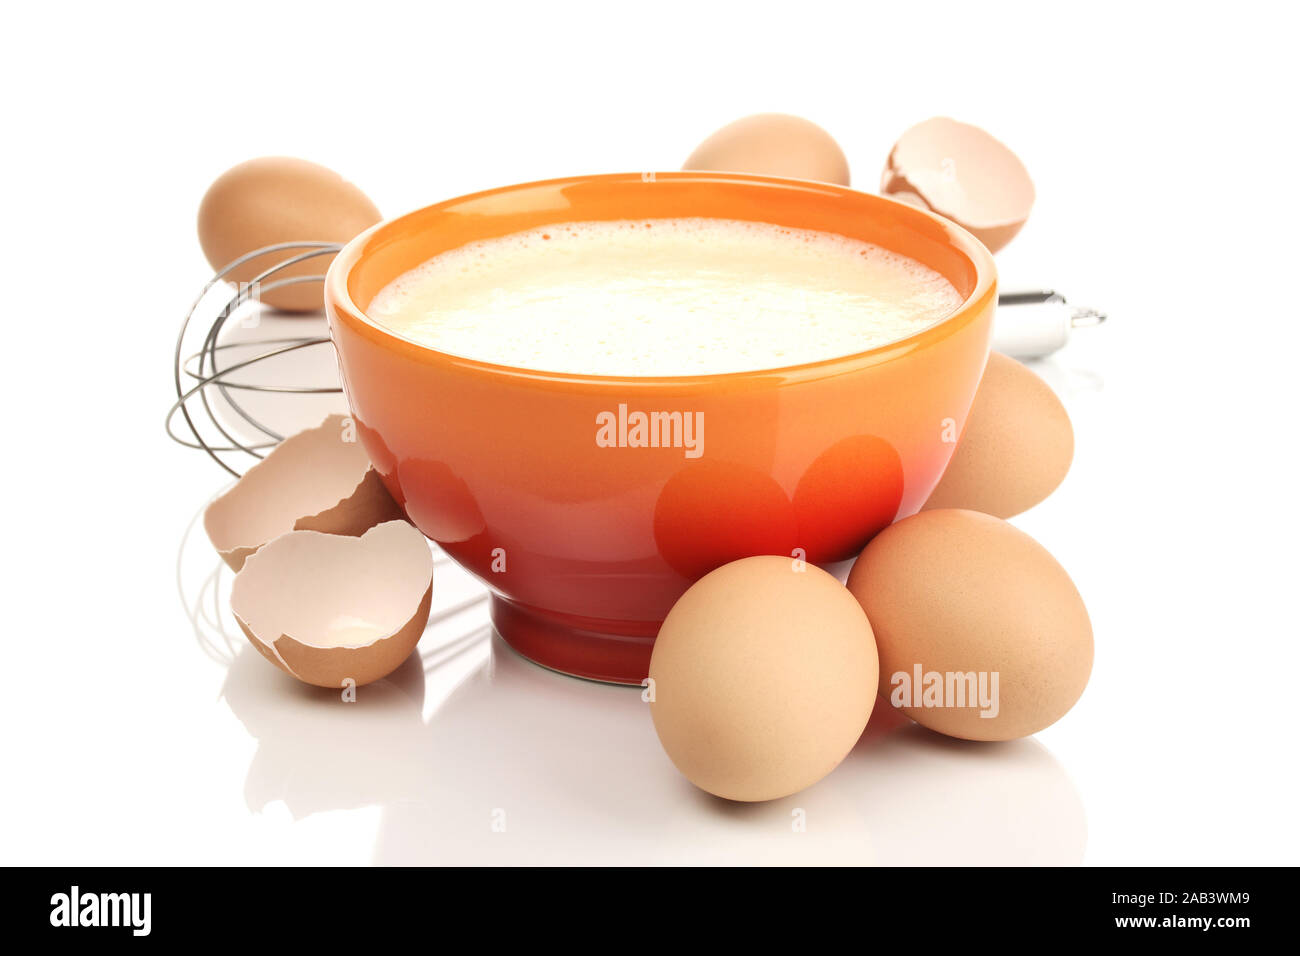 Schüssel mit Rühreier und Schneebesen |Bowl with scrambled eggs and whisk| Stock Photo